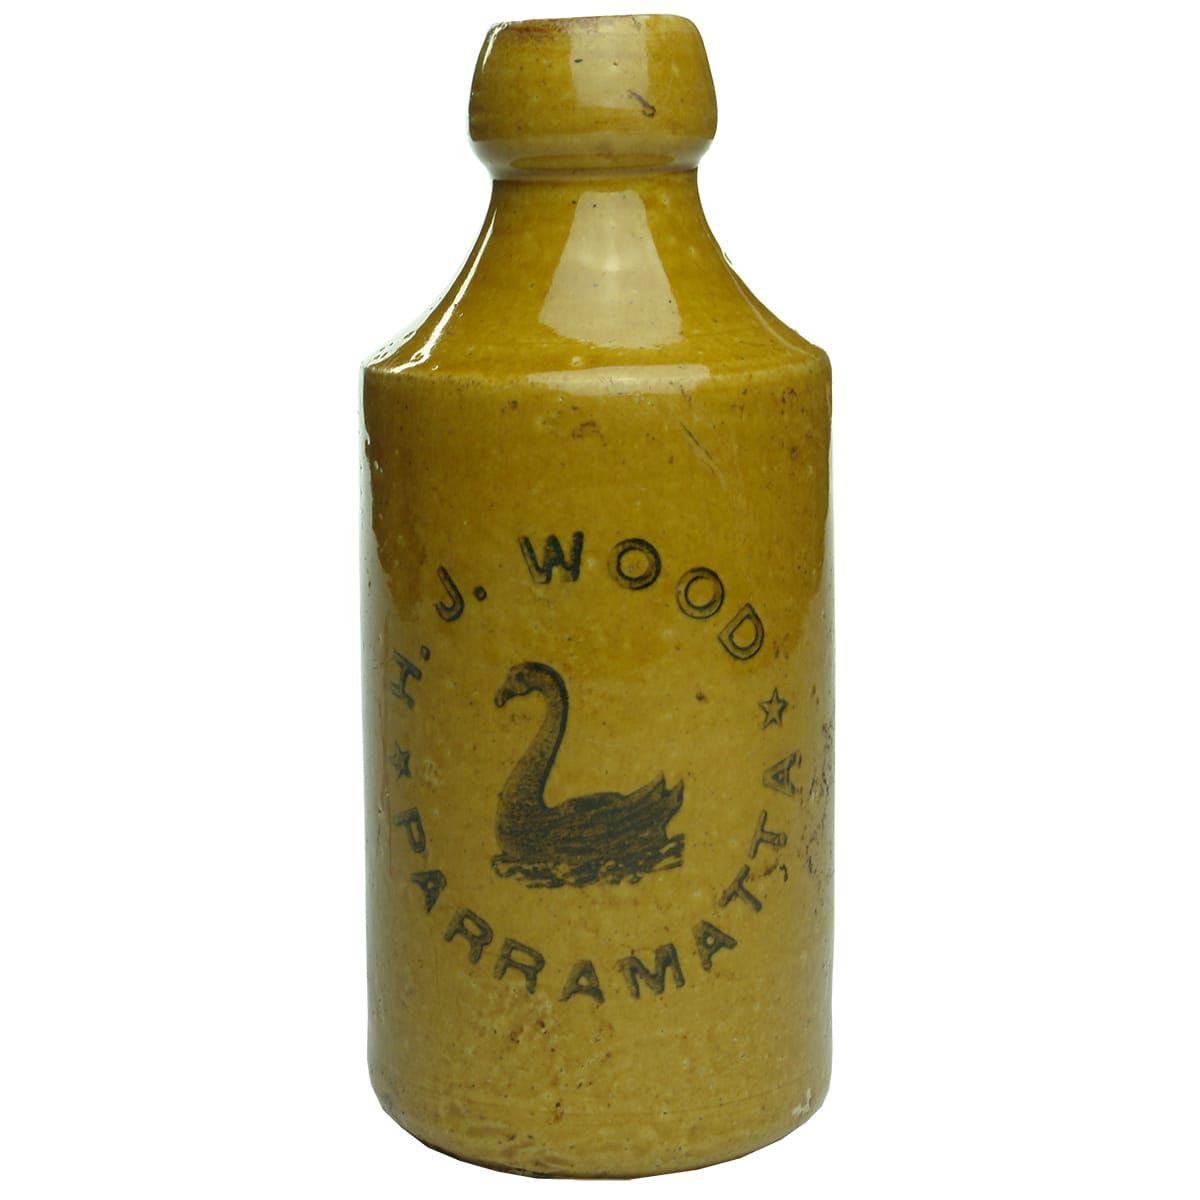 Ginger Beer. H. J. Wood, Parramatta. Internal Thread. All Tan.